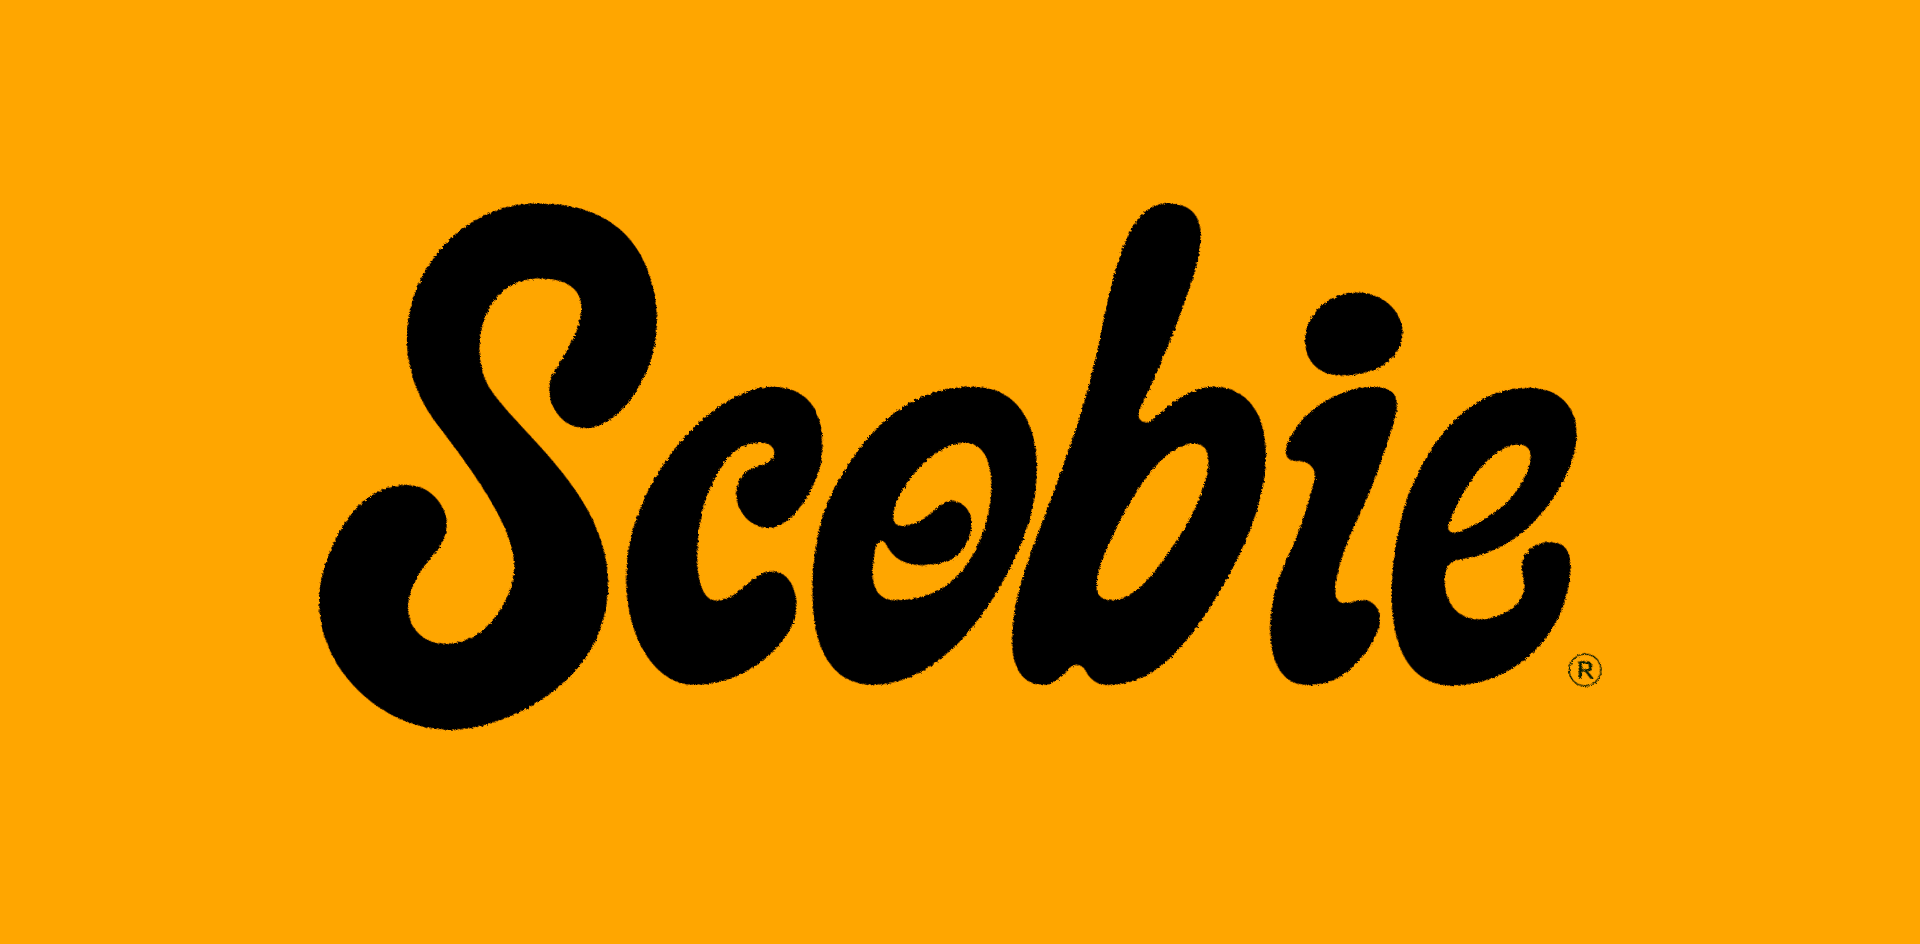 Scobie-type